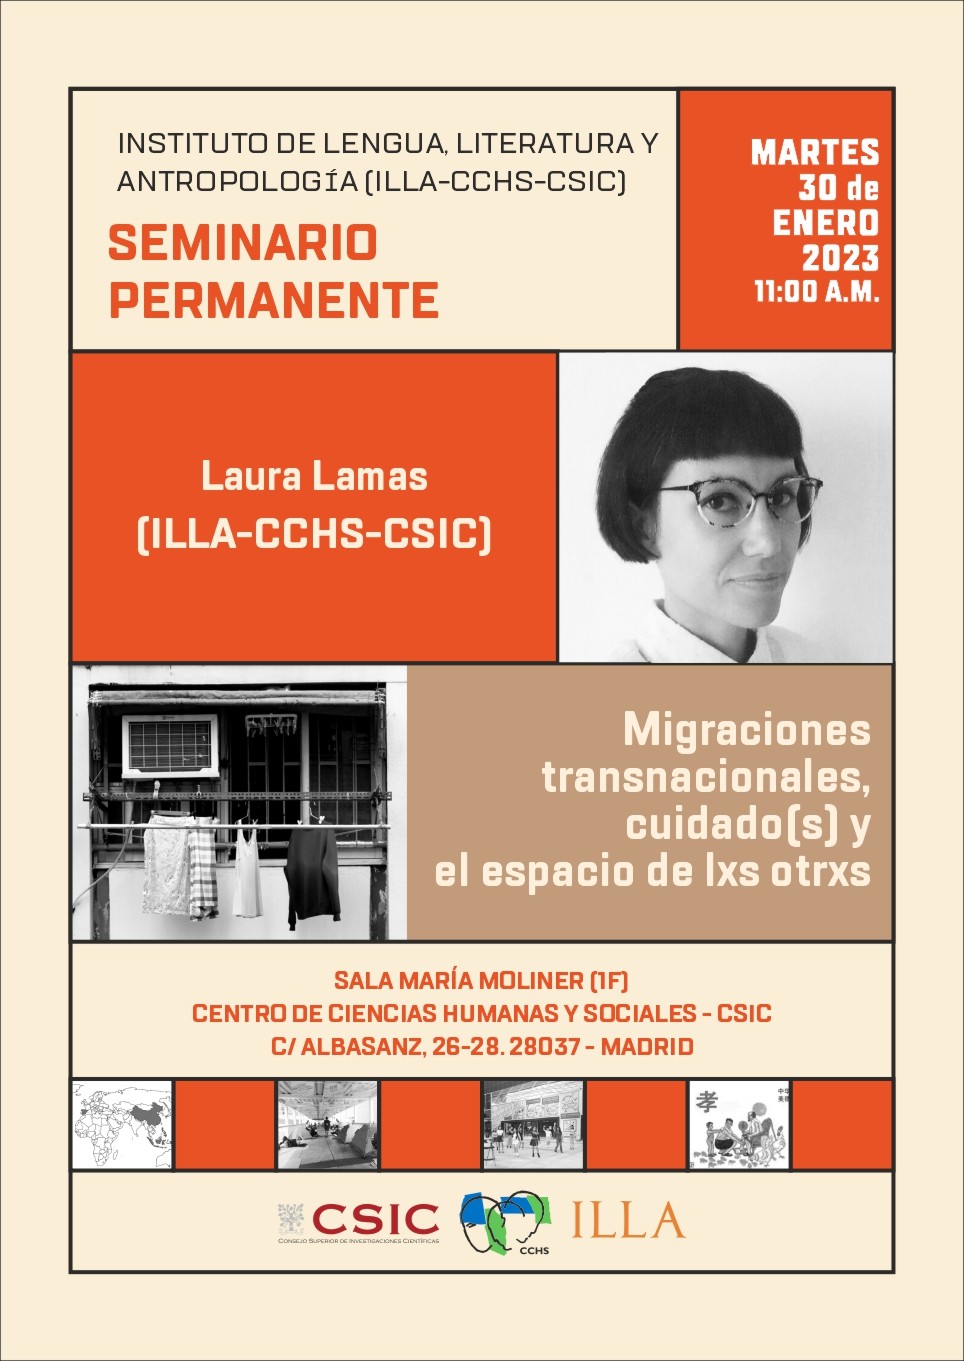 Empieza el año con un nuevo seminario permanente del ILLA